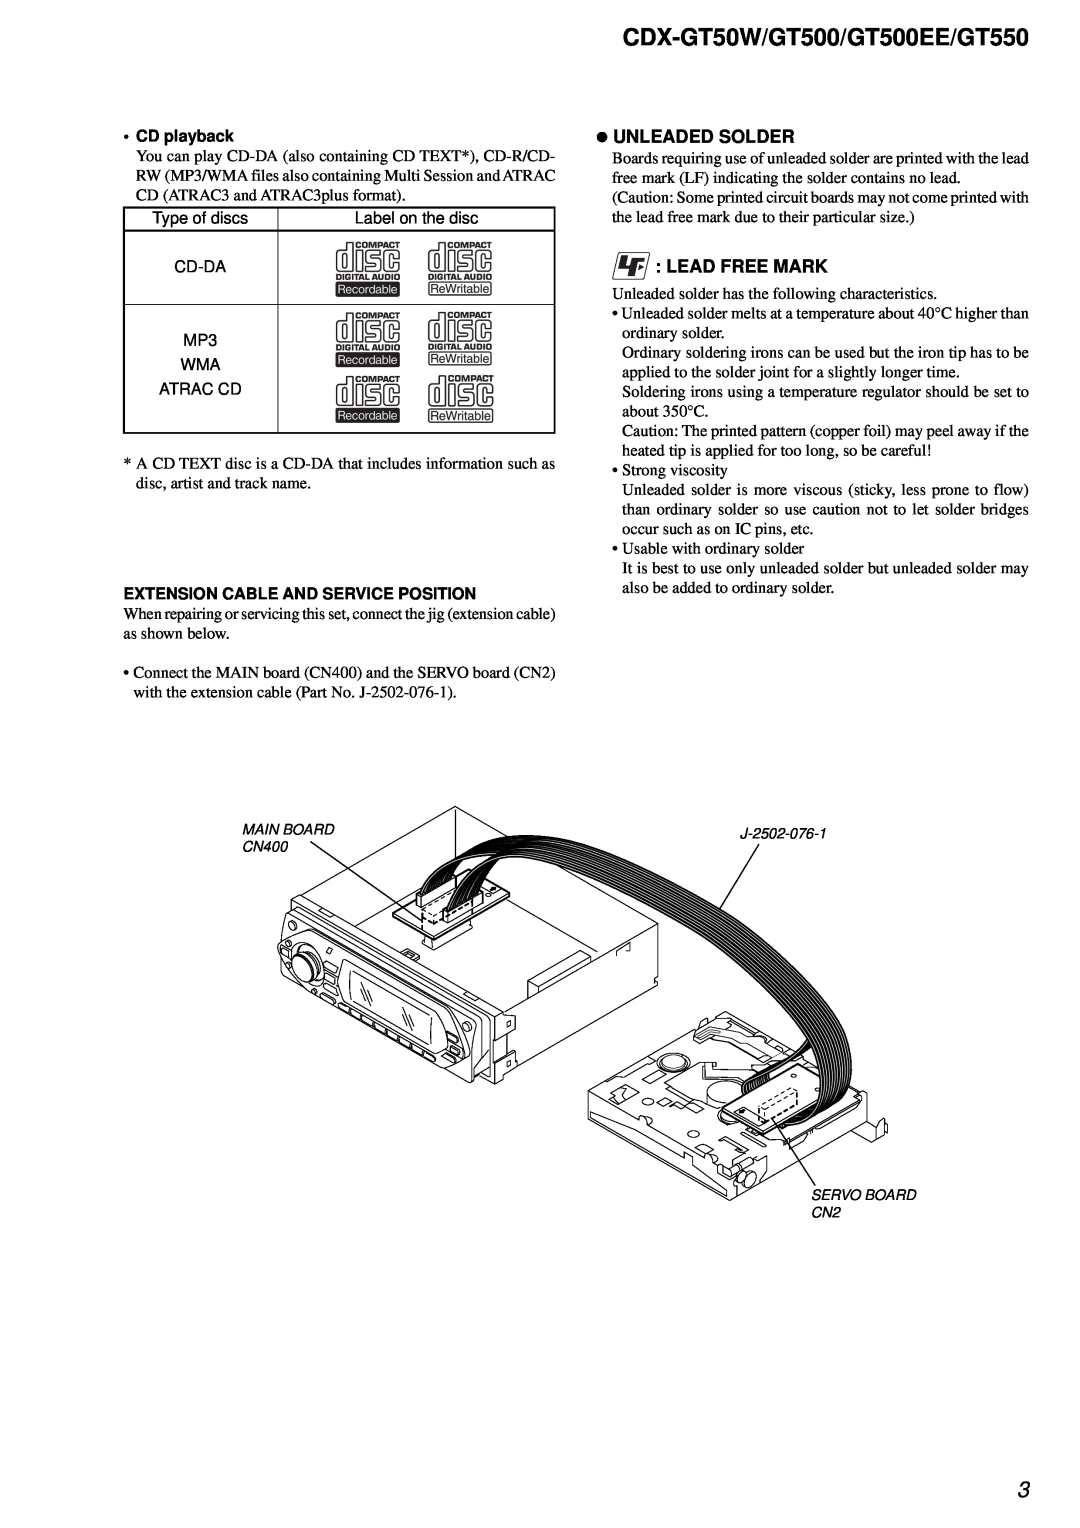 Sony CDX-GT550, CDX-GT500EE service manual zUNLEADED SOLDER, Lead Free Mark, CDX-GT50W/GT500/GT500EE/GT550, CD playback 